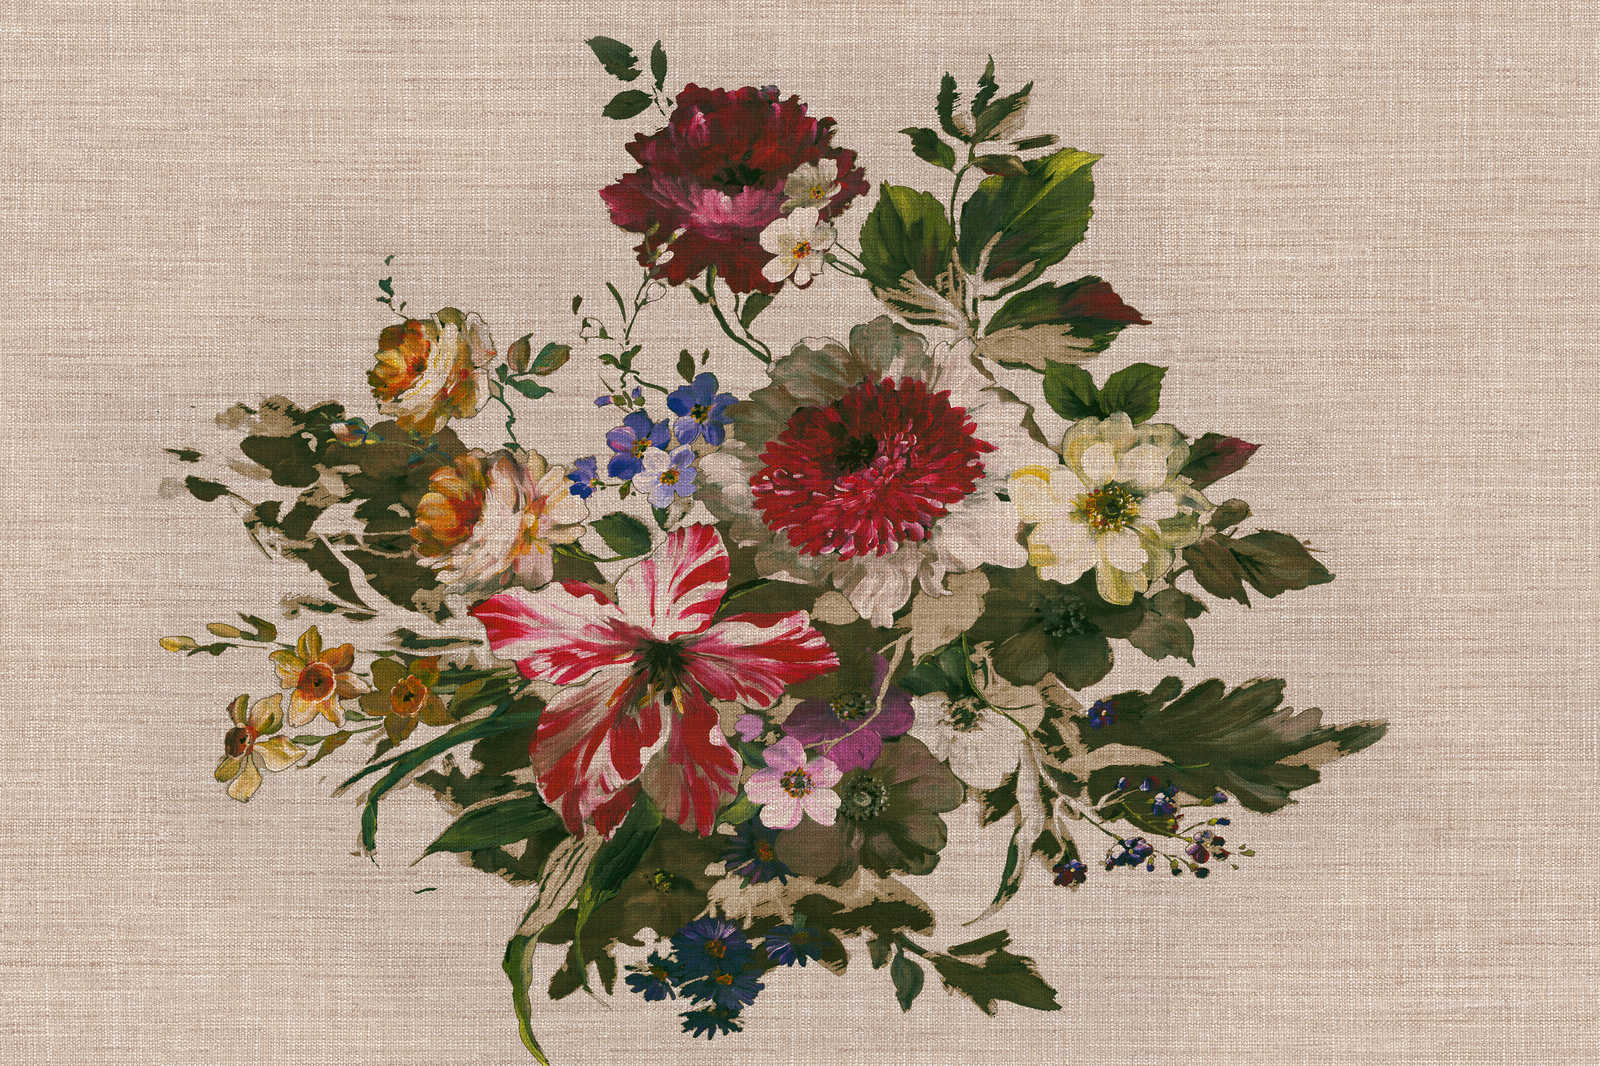             Tela dipinta con fiori in stile vintage e aspetto lino - 0,90 m x 0,60 m
        